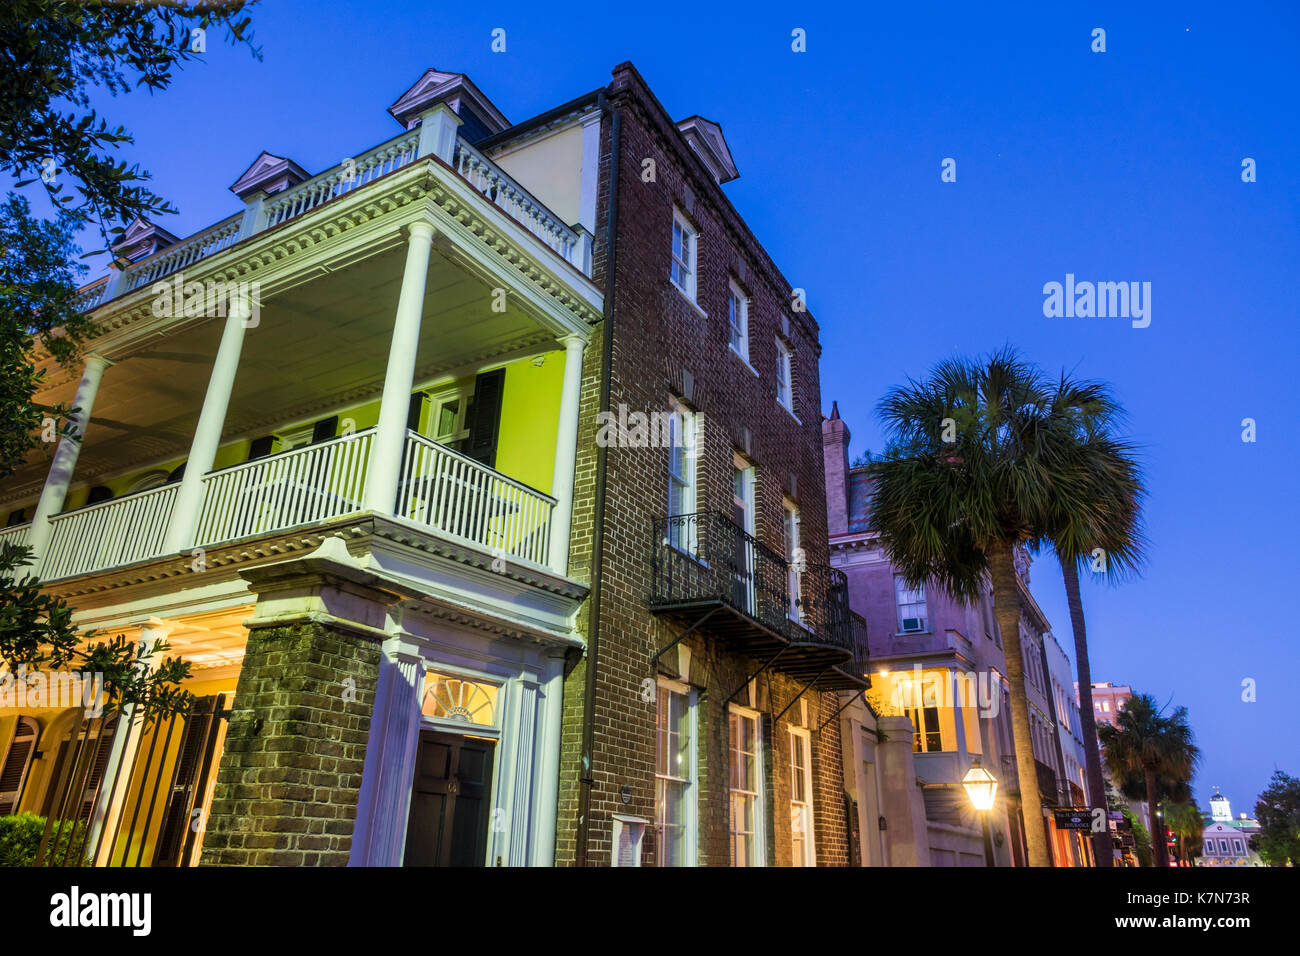 Charleston South Carolina, historische Innenstadt, Broad Street, Dämmerung, Nacht, Charleston Einfamilienhaus, Architektur, piazza, Veranda, SC170514257 Stockfoto